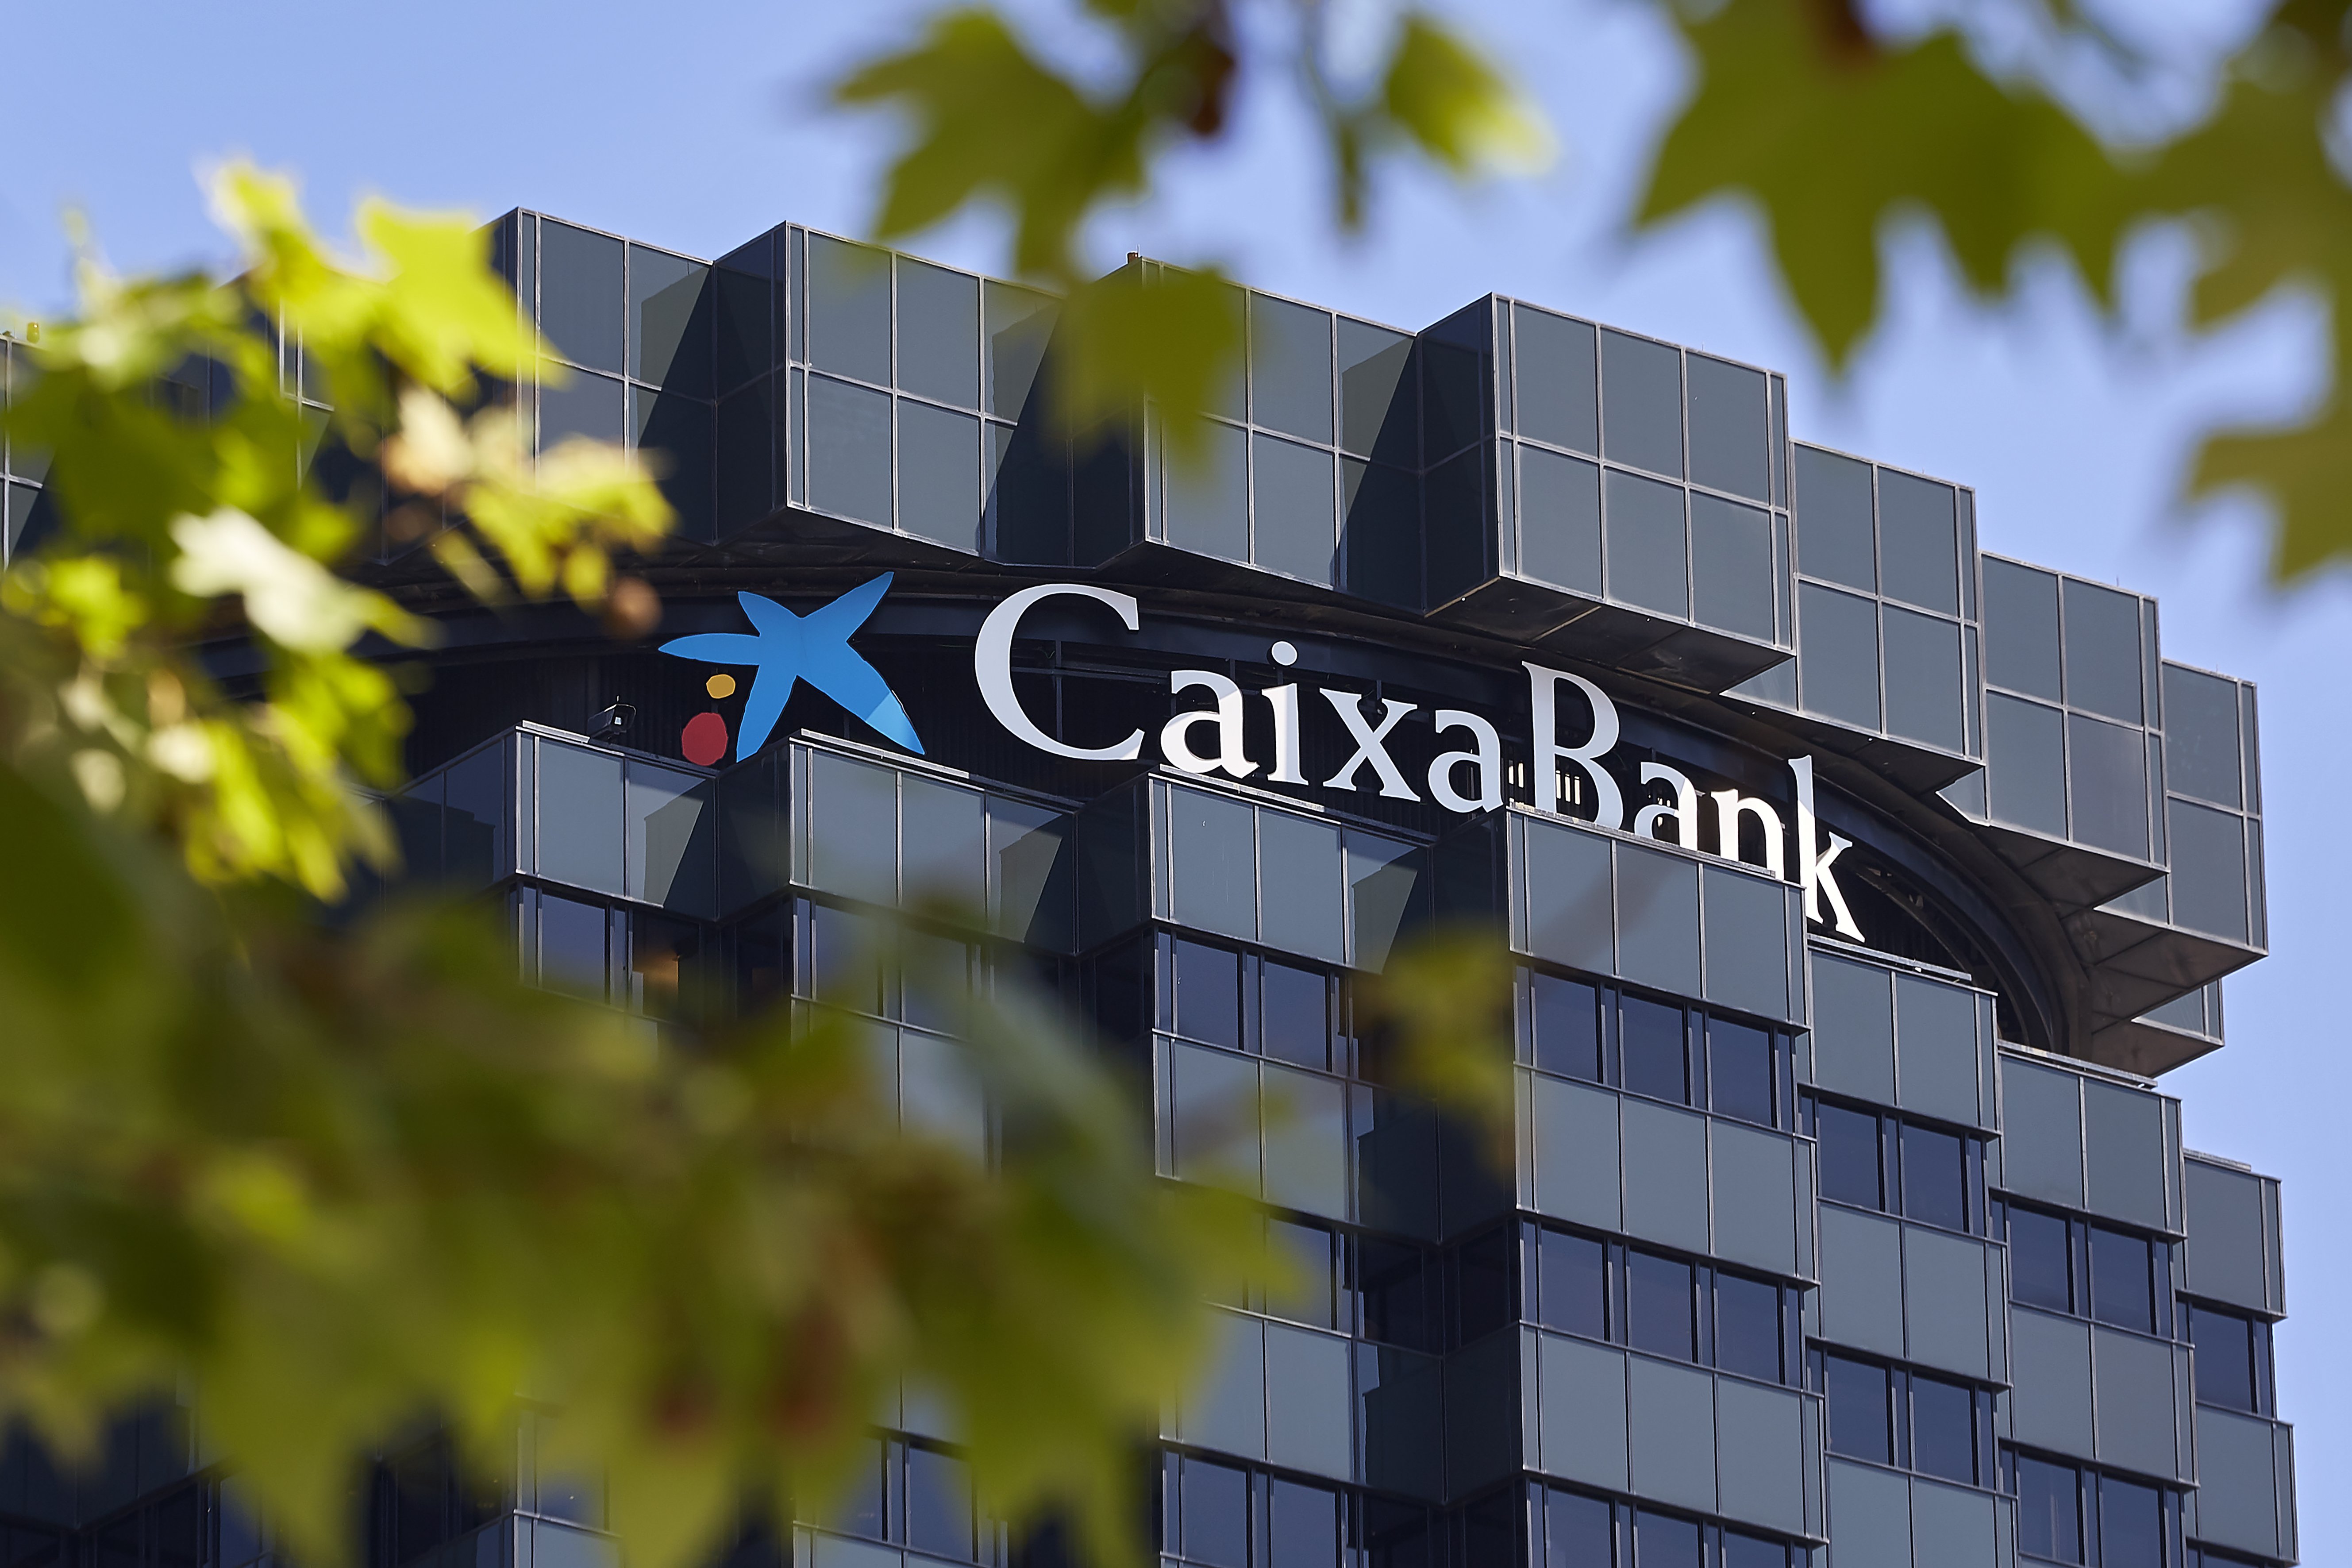 L’activitat de CaixaBank aporta el 0,96% al PIB espanyol